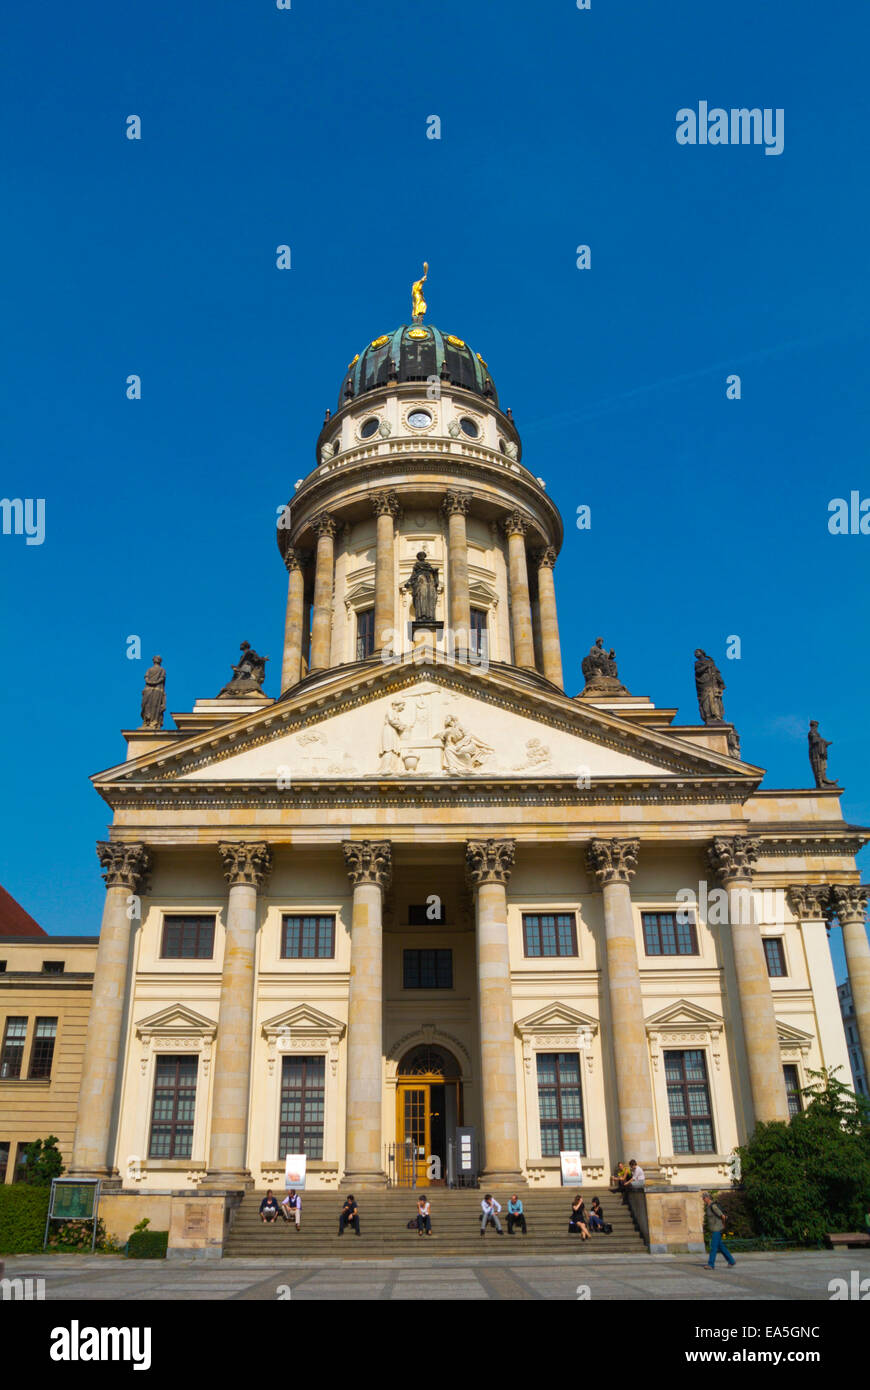 Französischer Dom, French Cathedral, Gendarmenmarkt square, Friedrichstadt, Mitte district, central Berlin, Germany Stock Photo